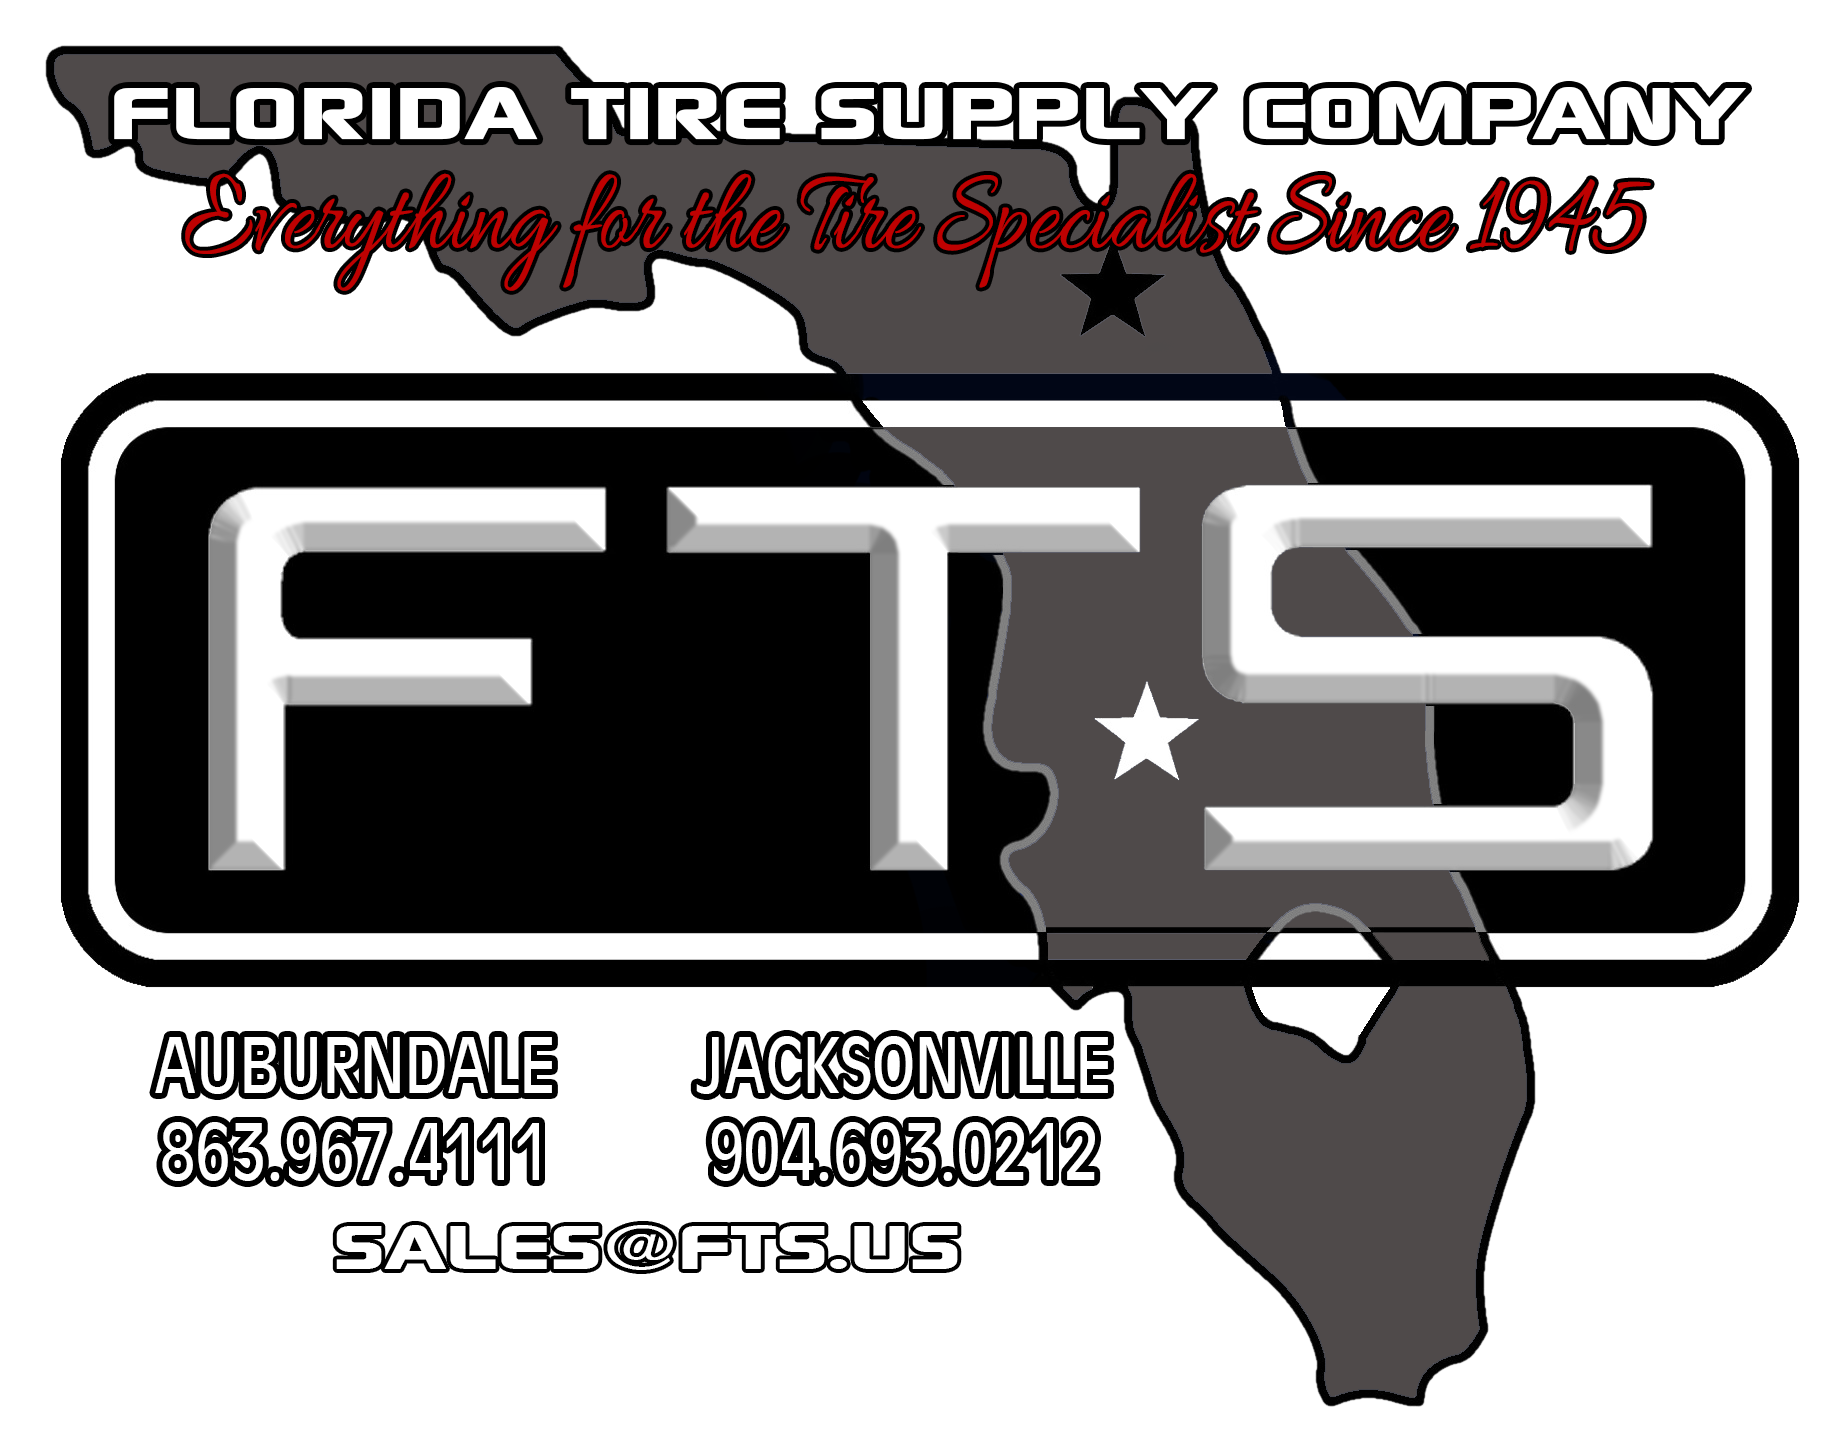 FTS Logo